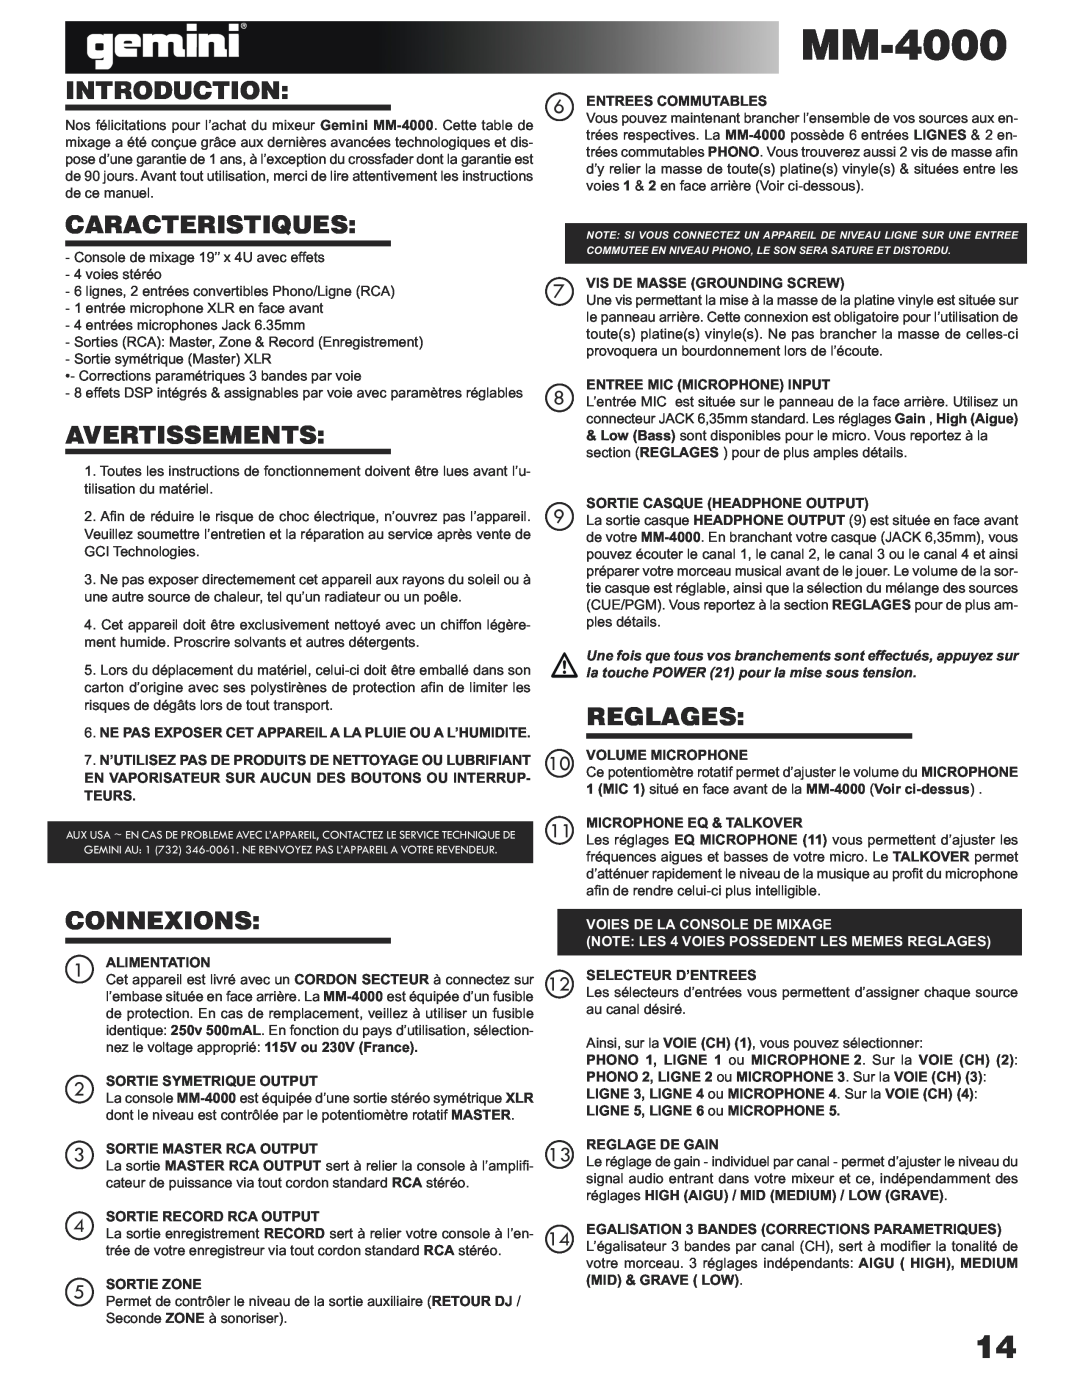 Gemini MM-4000 manual Caracteristiques, Avertissements, Reglages, Connexions, Introduction, Voies De La Console De Mixage 